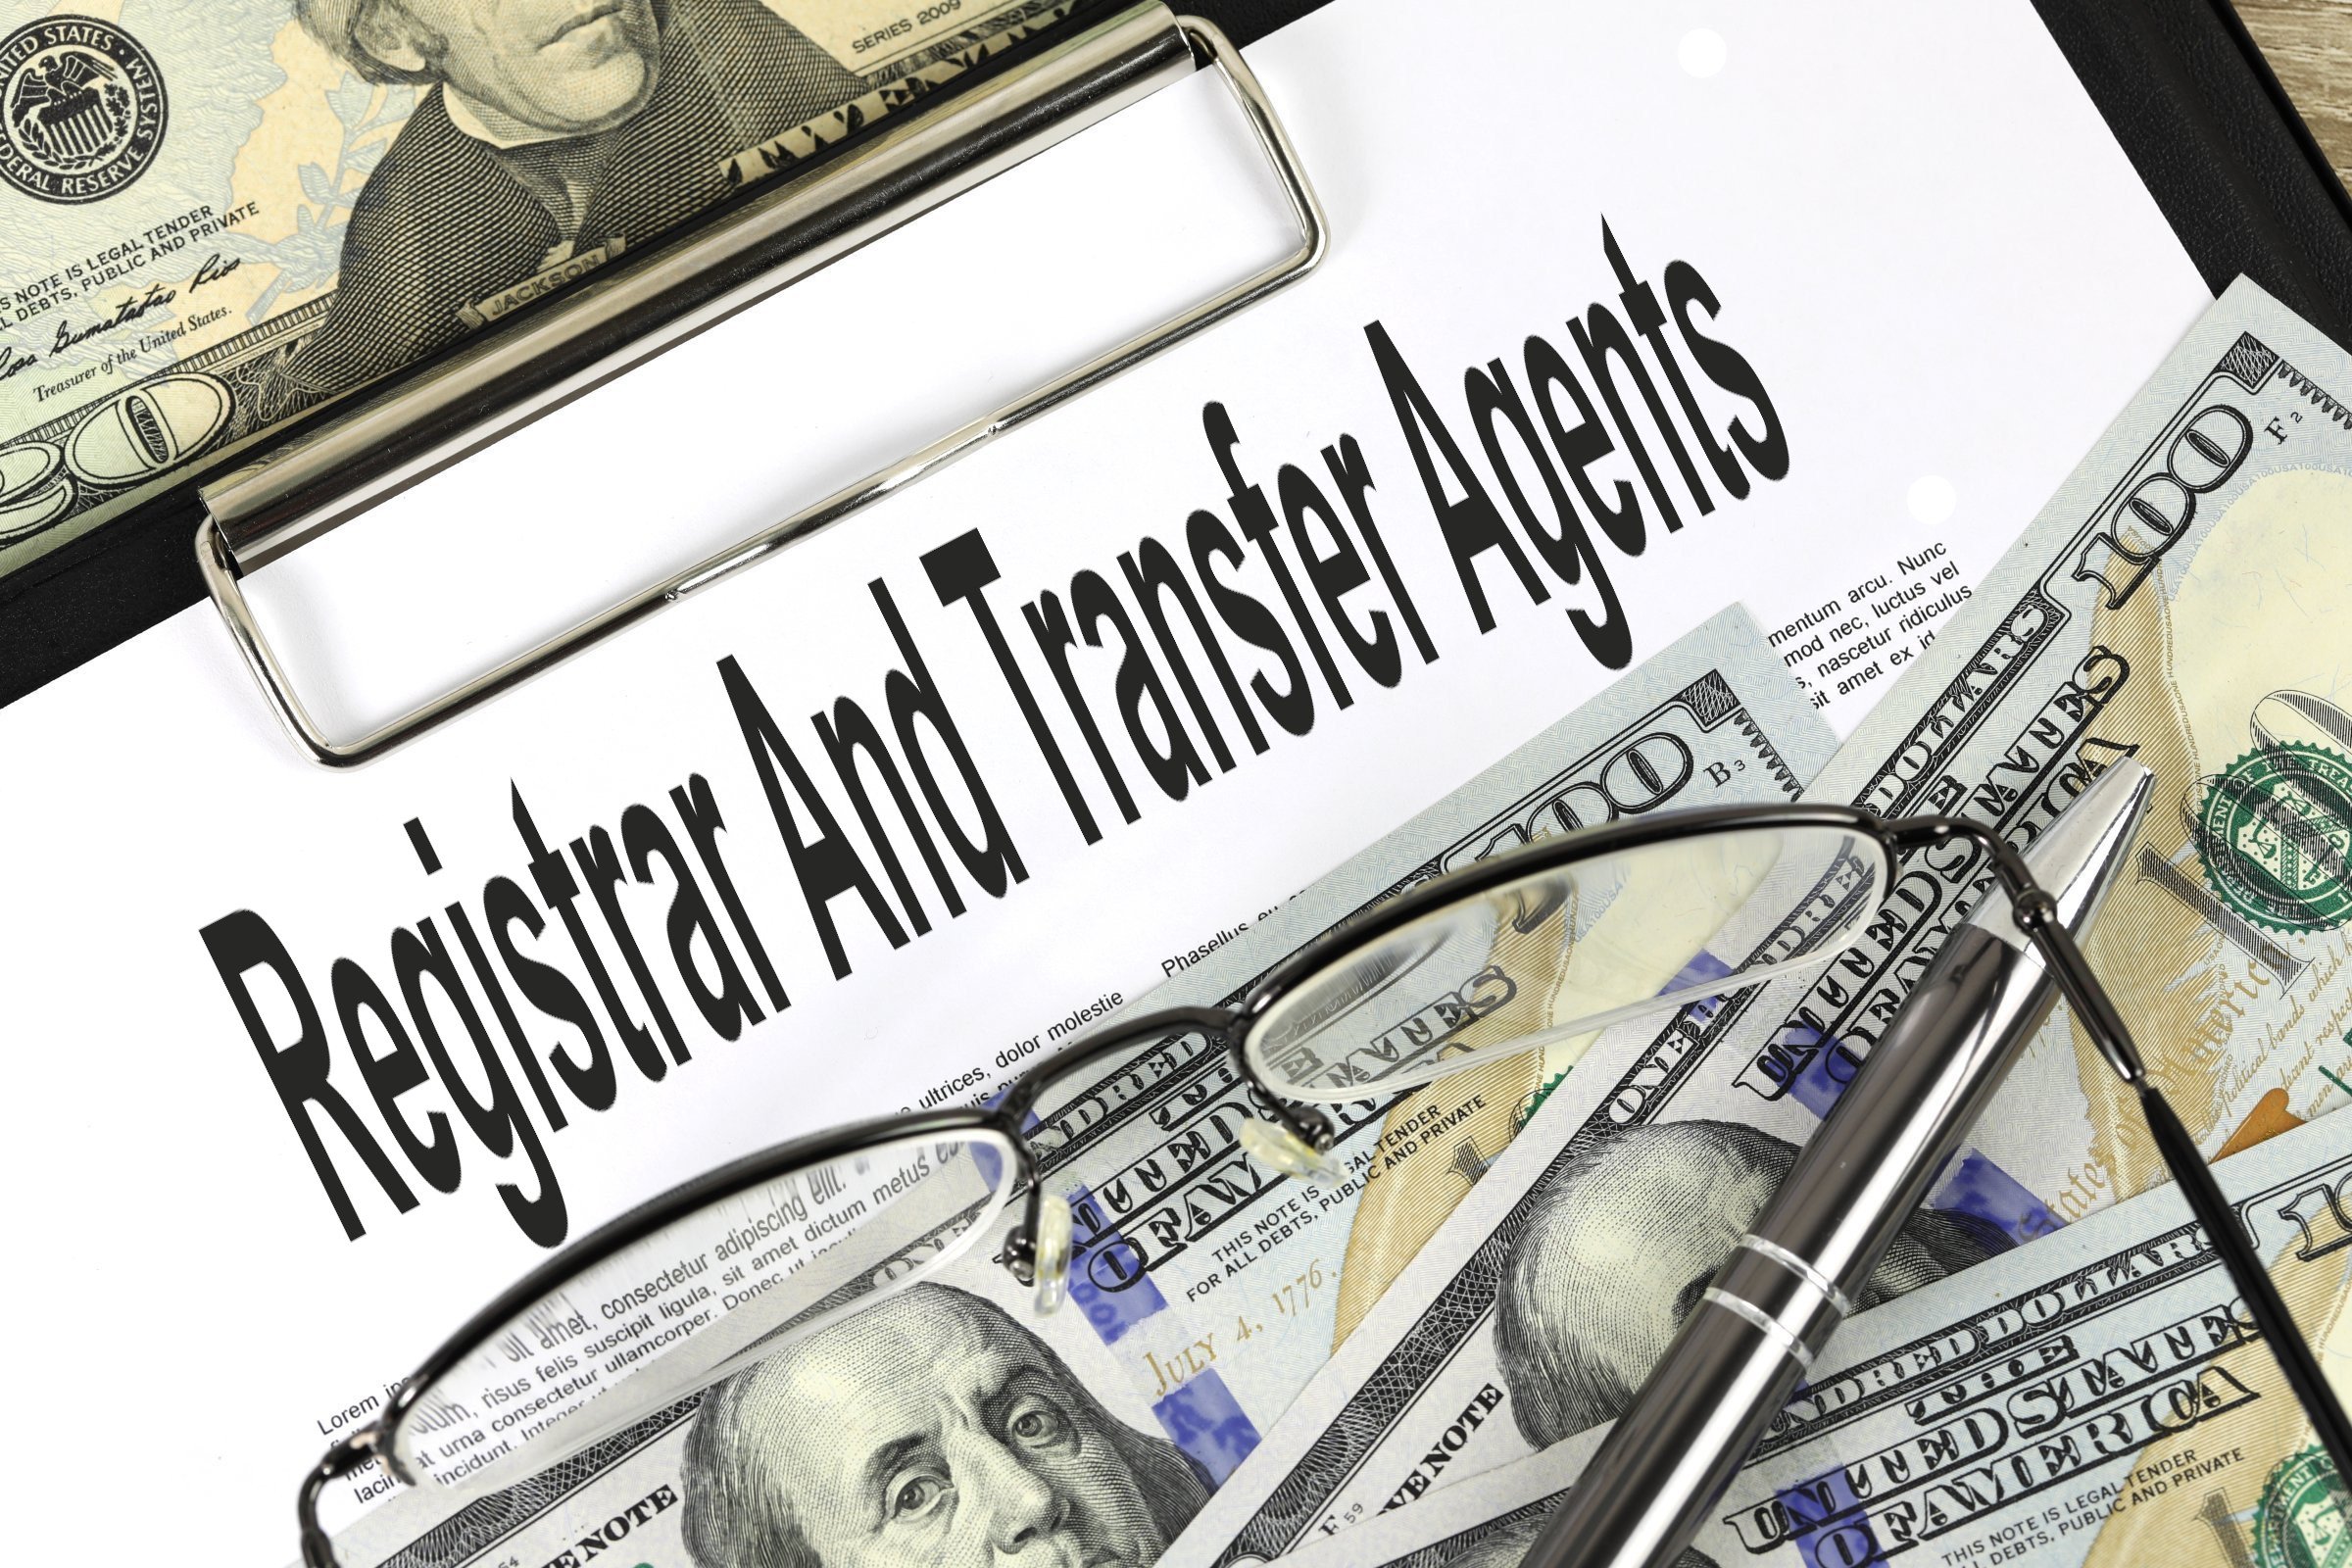 registrar and transfer agents